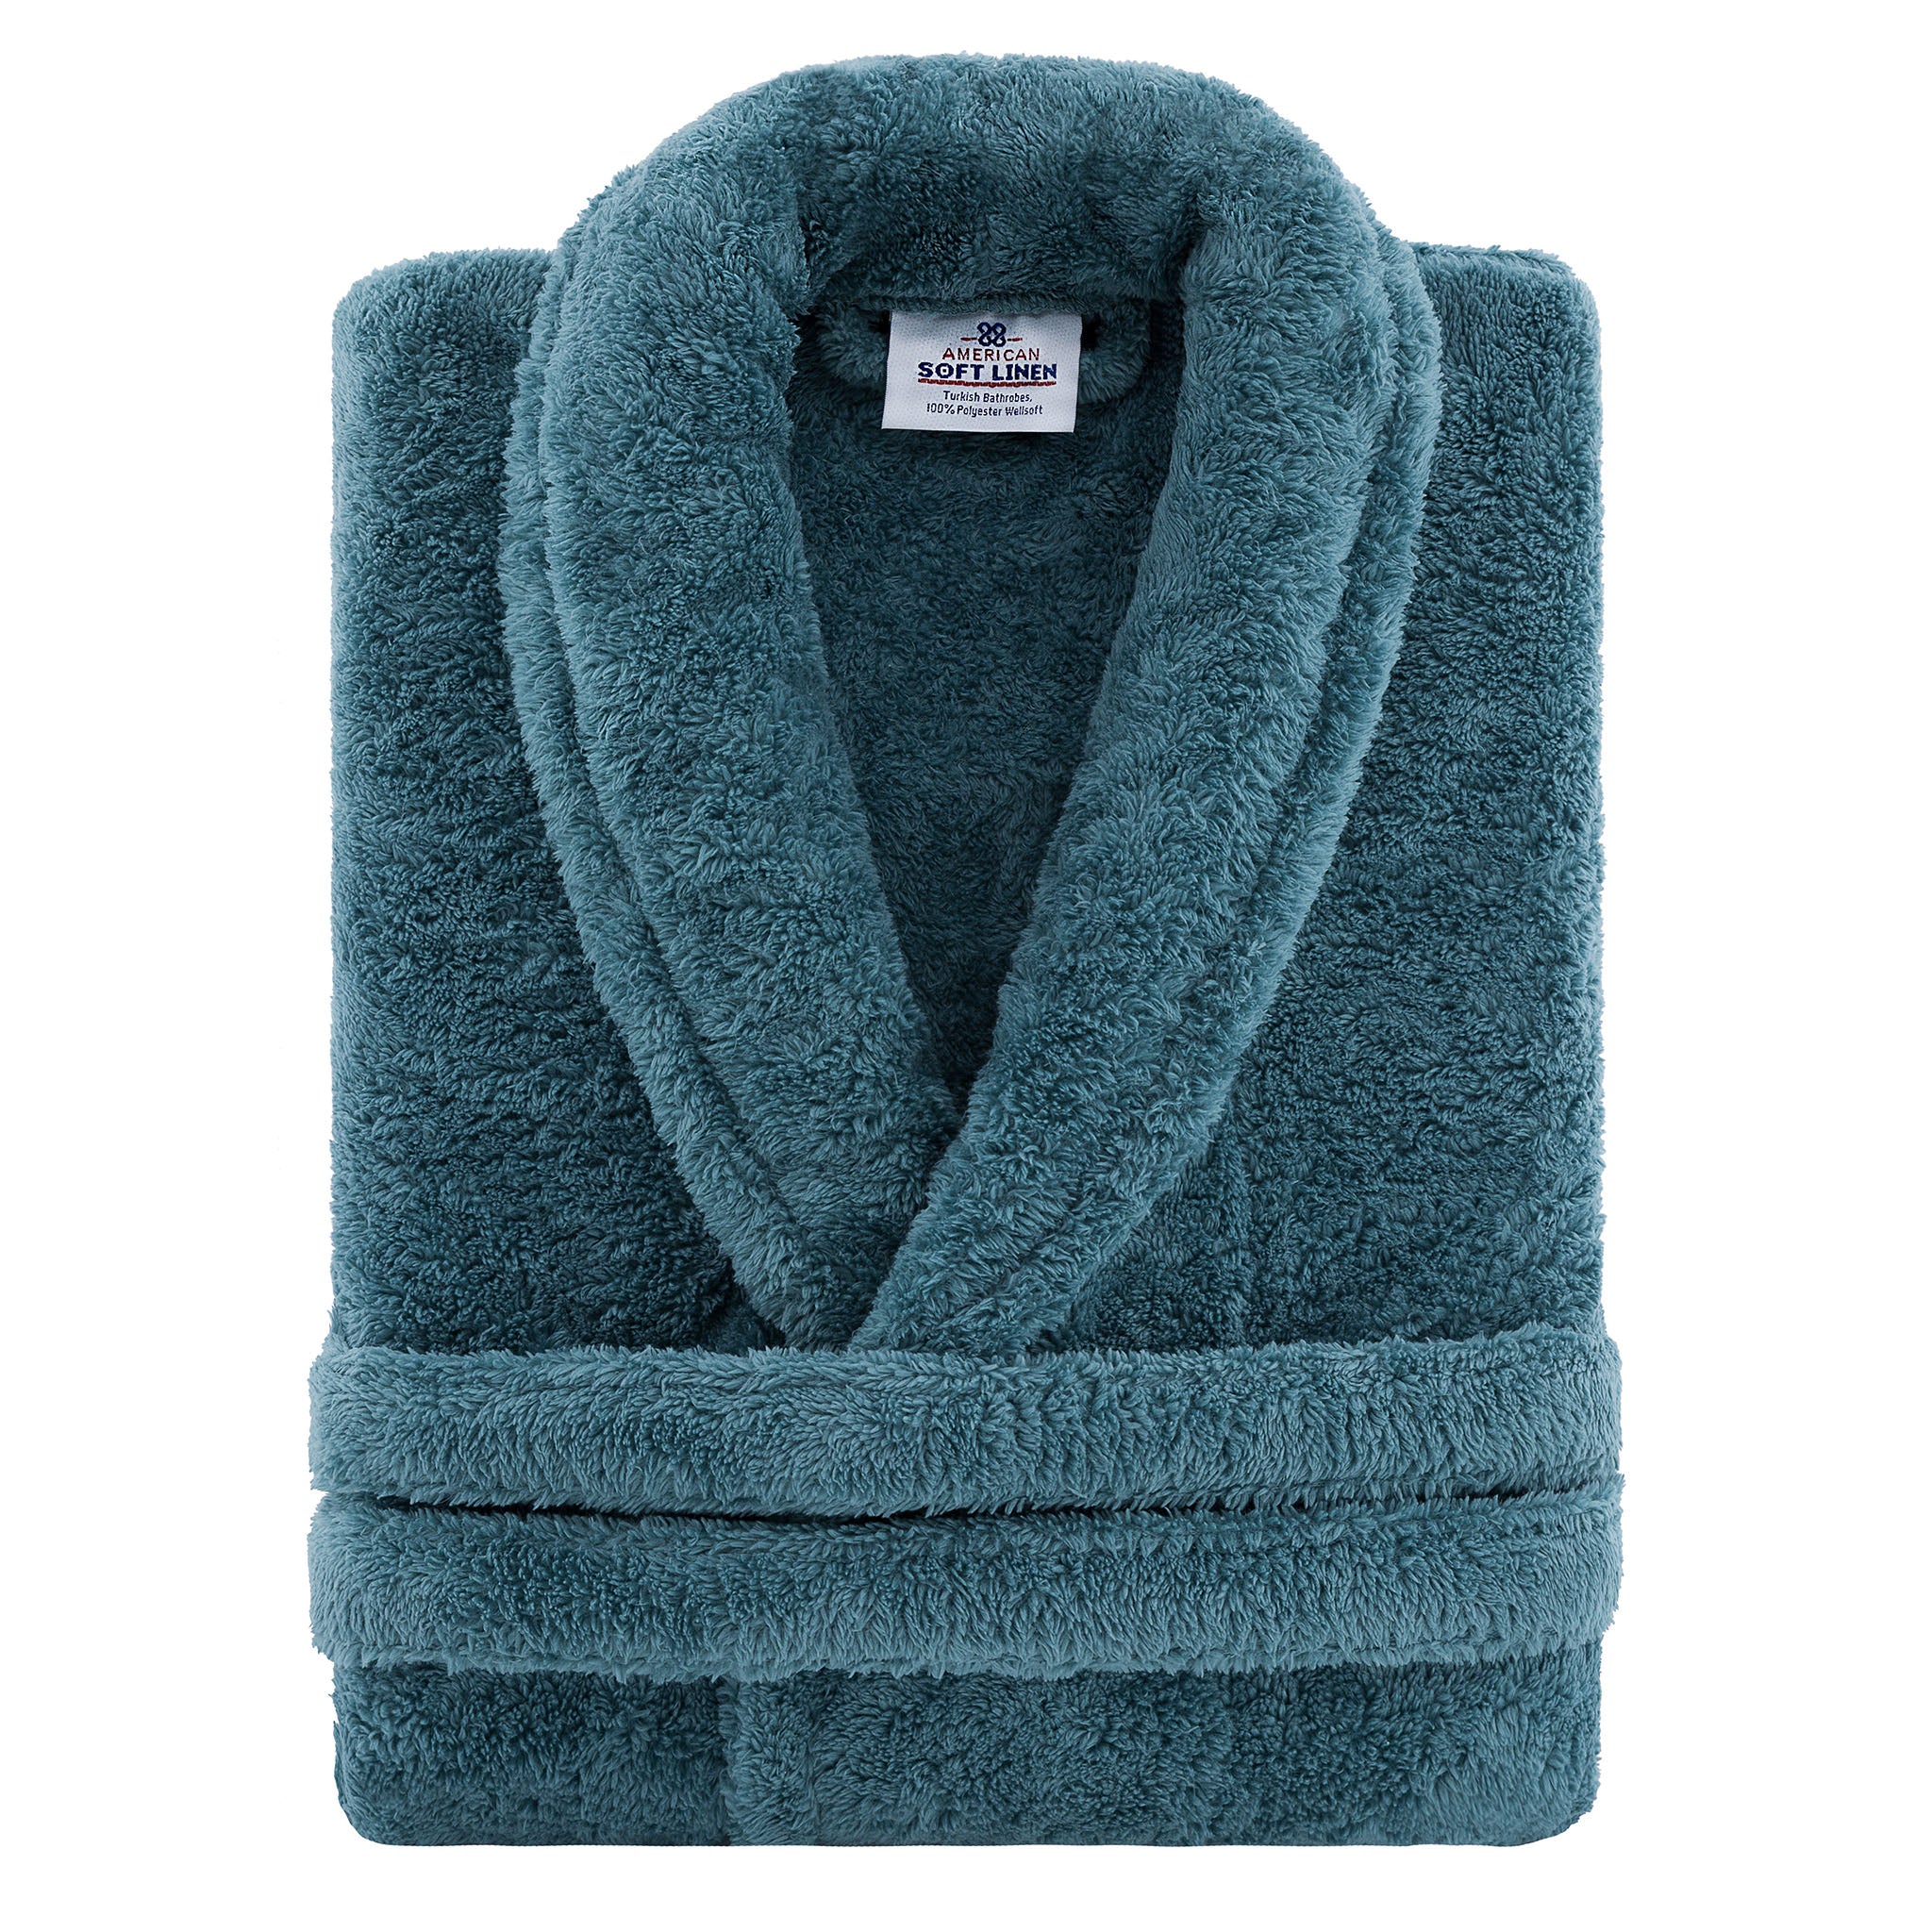 American Soft Linen Super Soft Absorbent and Fluffy Unisex Fleece Bathrobe -12 Set Case Pack -XL-XXL-colonial-blue-3